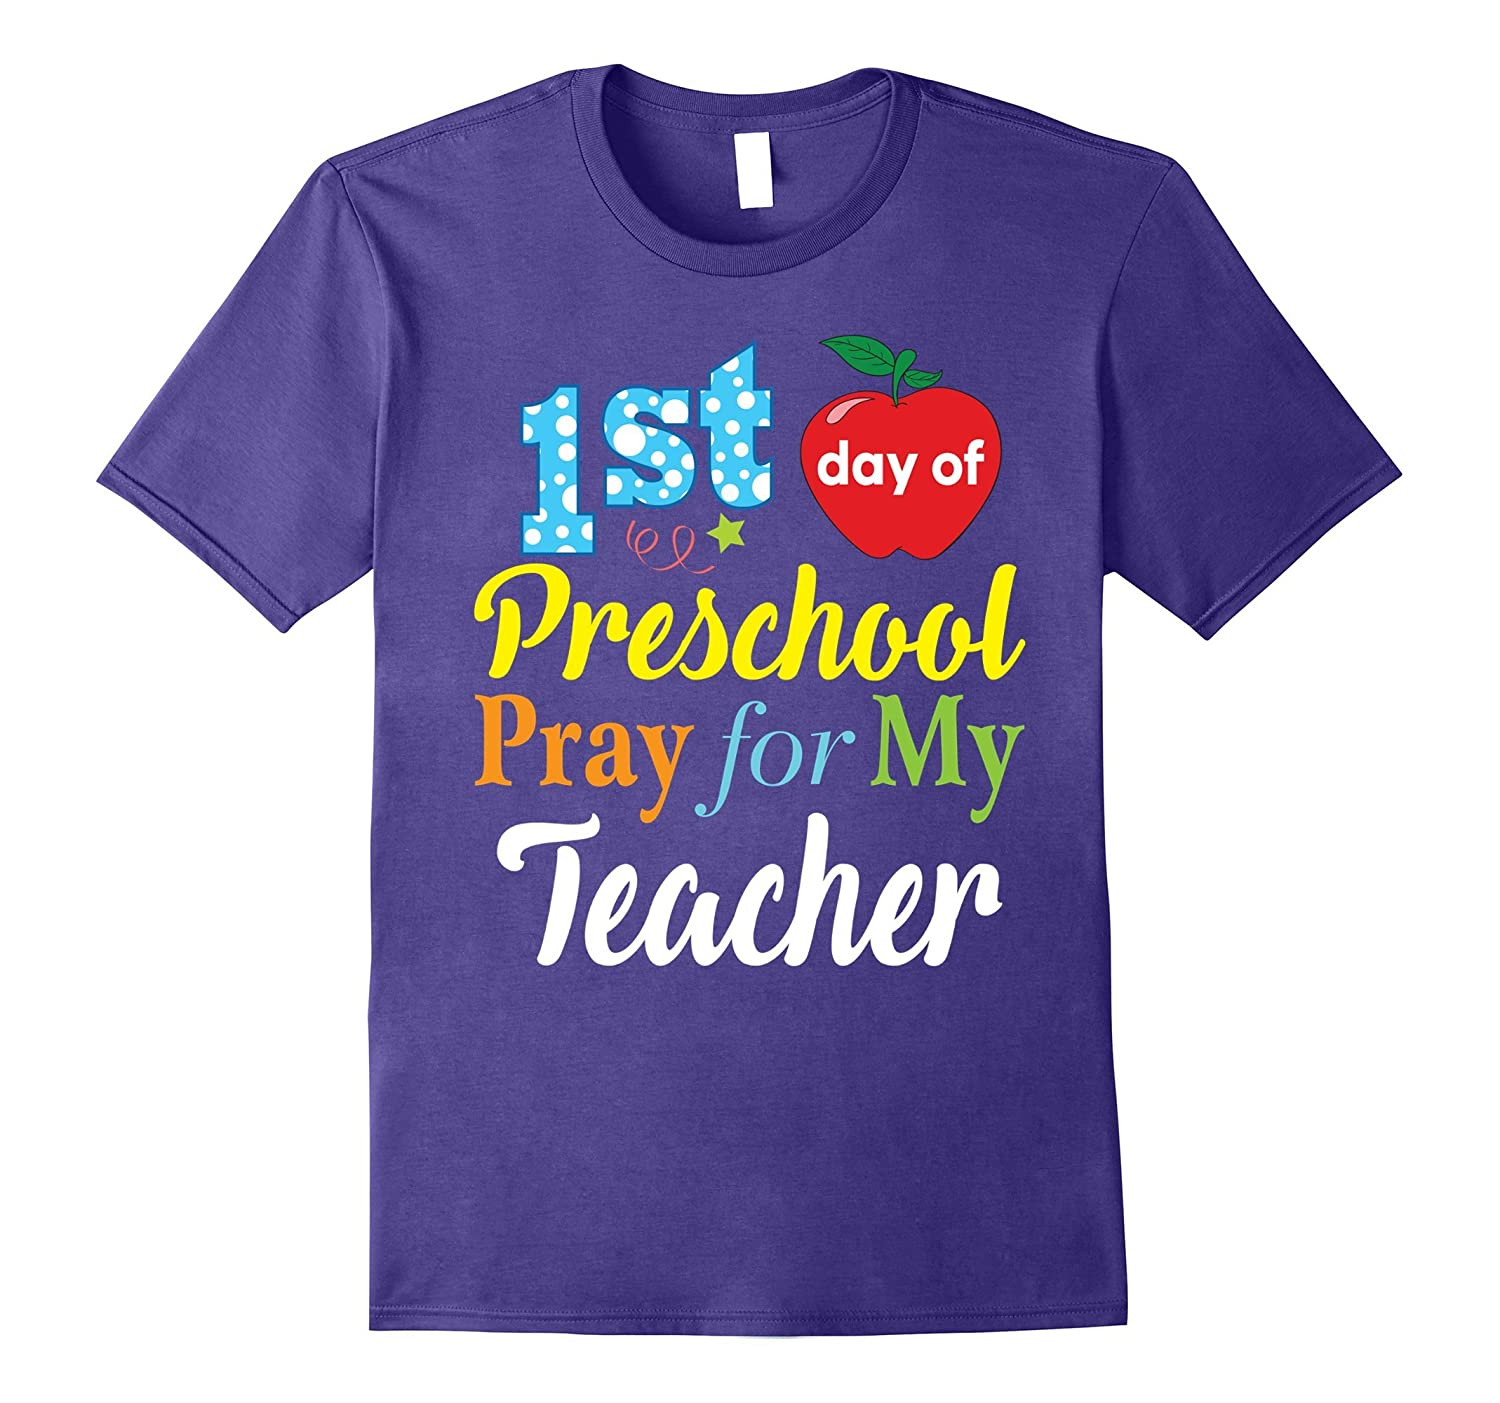 Preschool Shirt Ideas
 First Day of Preschool Pray for My Teacher T Shirt Kids